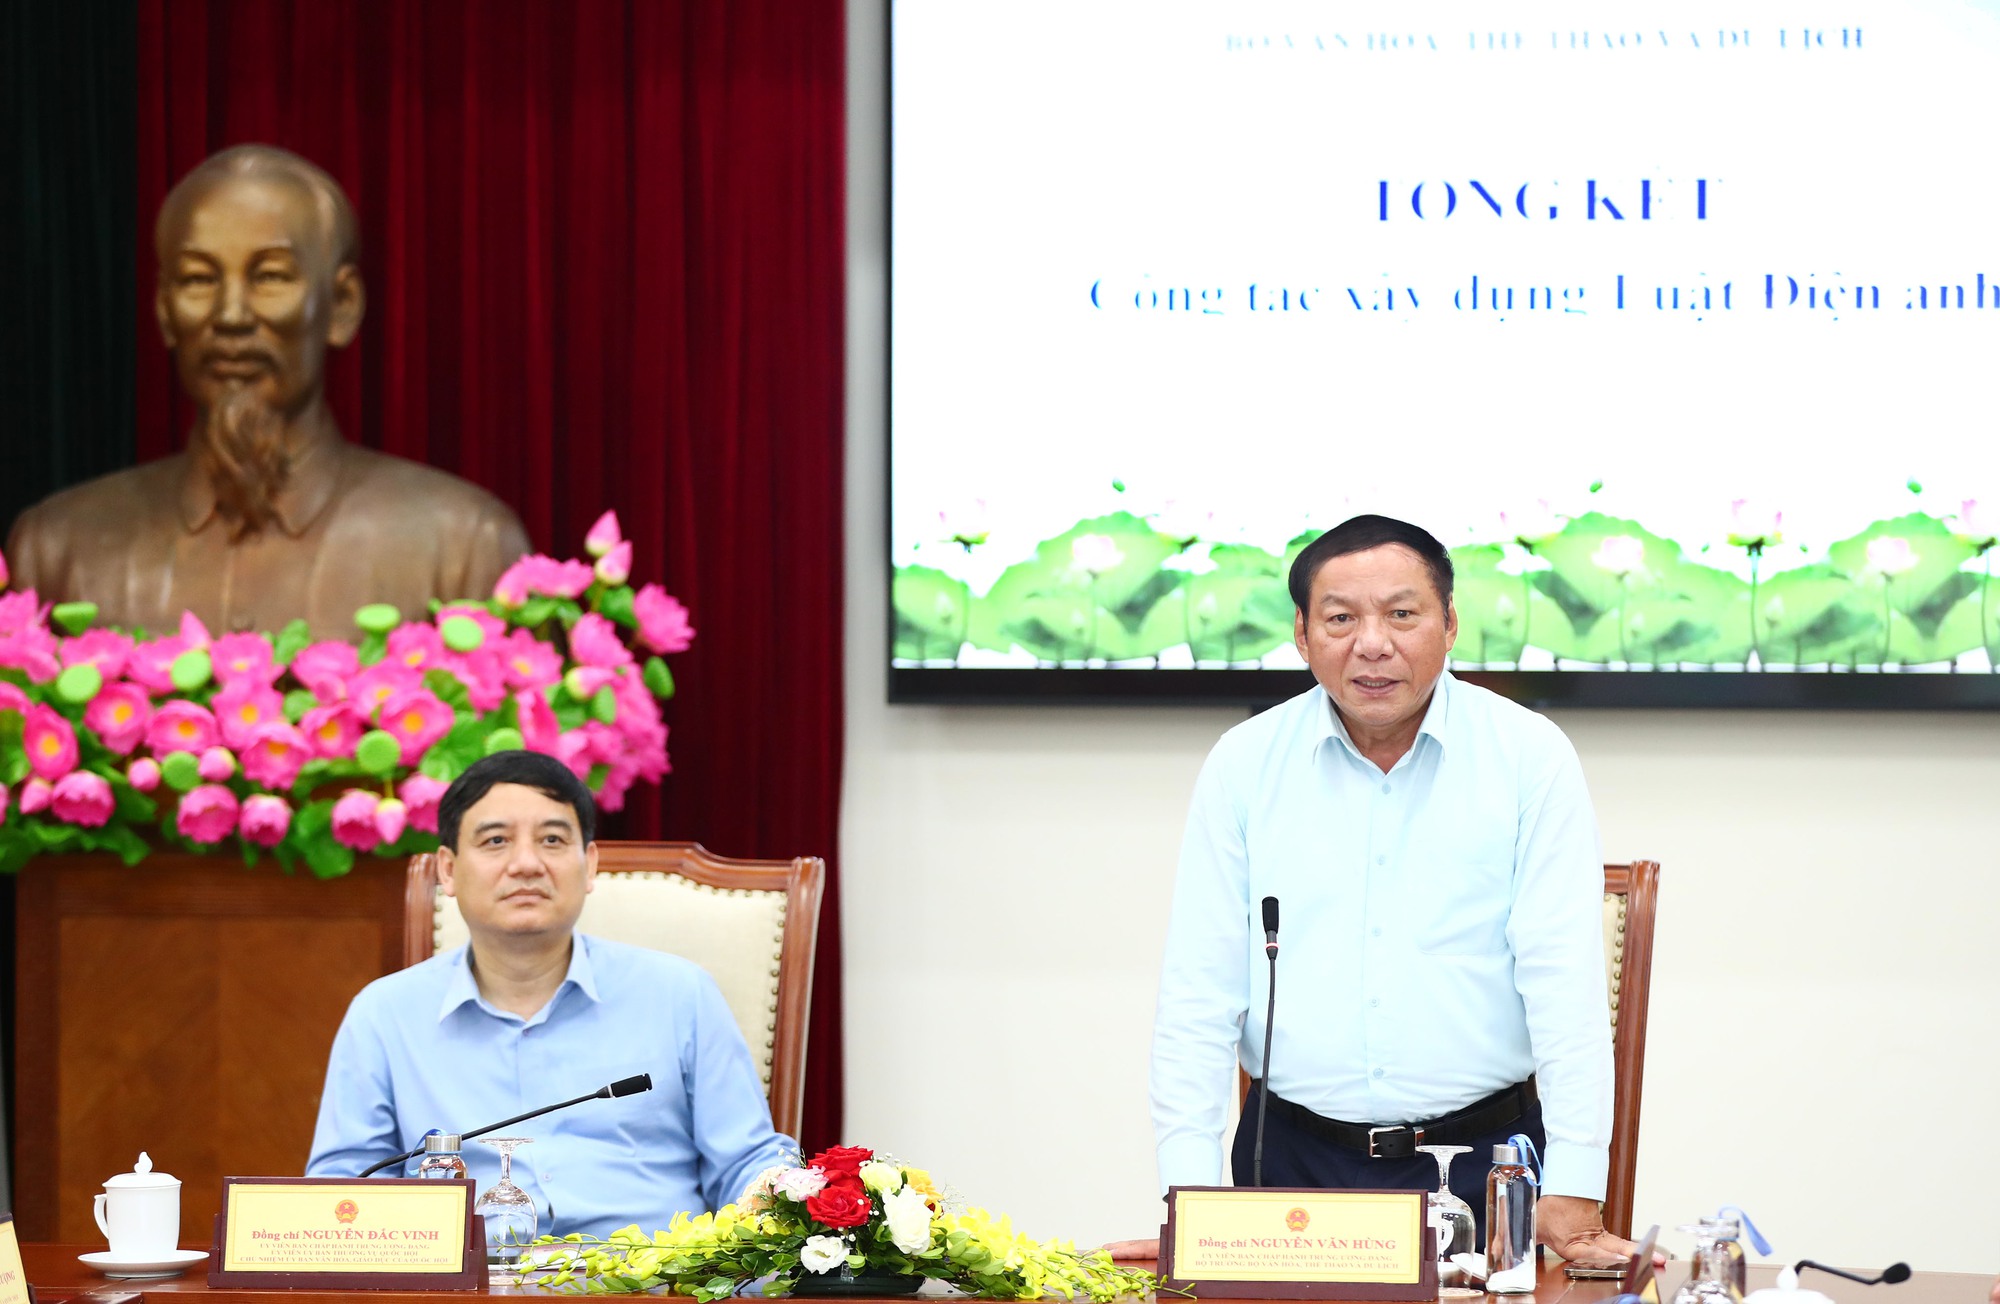 Bộ trưởng Nguyễn Văn Hùng: Luật Điện ảnh sẽ trở thành động lực khuyến khích sự phát triển của nền điện ảnh dân tộc - Ảnh 1.